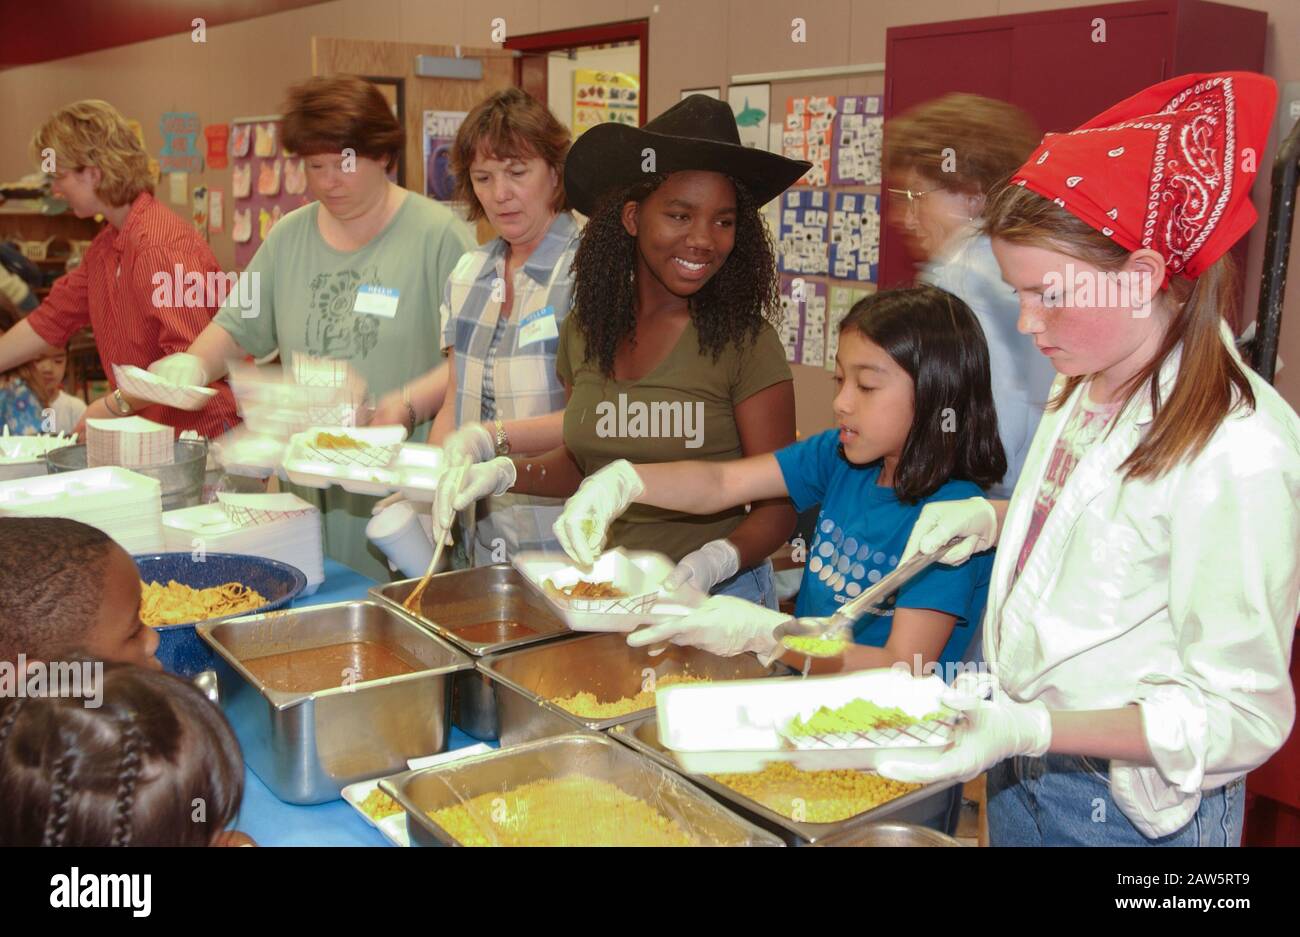 Gli studenti del quinto grado servono il pranzo alla classe dell'asilo durante il 'Kindergarten Rodeo' dove i bambini mangiano cibo in stile ranch e giocano a giochi all'aperto a tema ranch come esperienza di apprendimento presso una scuola elementare di Austin. Foto Stock